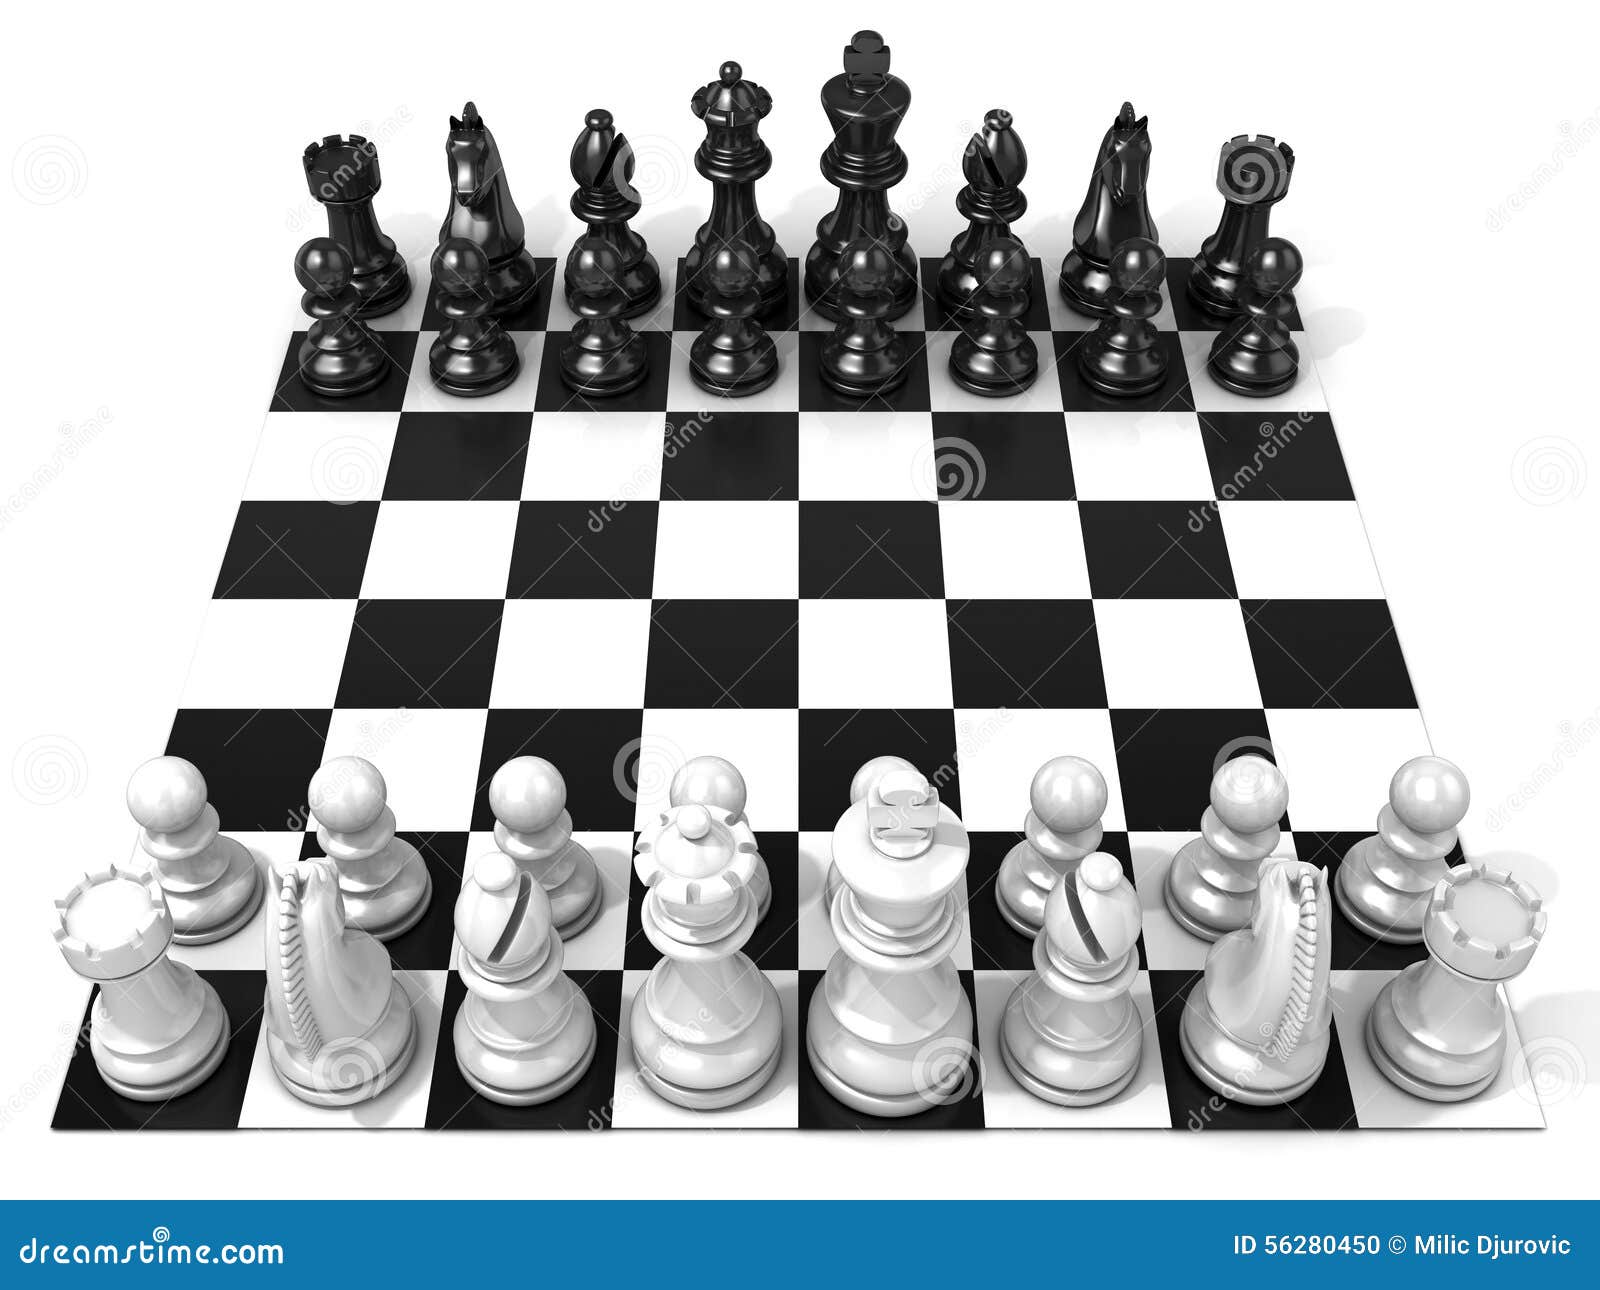 На шахматной доске 5 белых фигур. Расположение шахматных фигур. Расстановка шахматных фигур на доске. Расстановка белых в шахматах. Расставить шахматные фигуры.